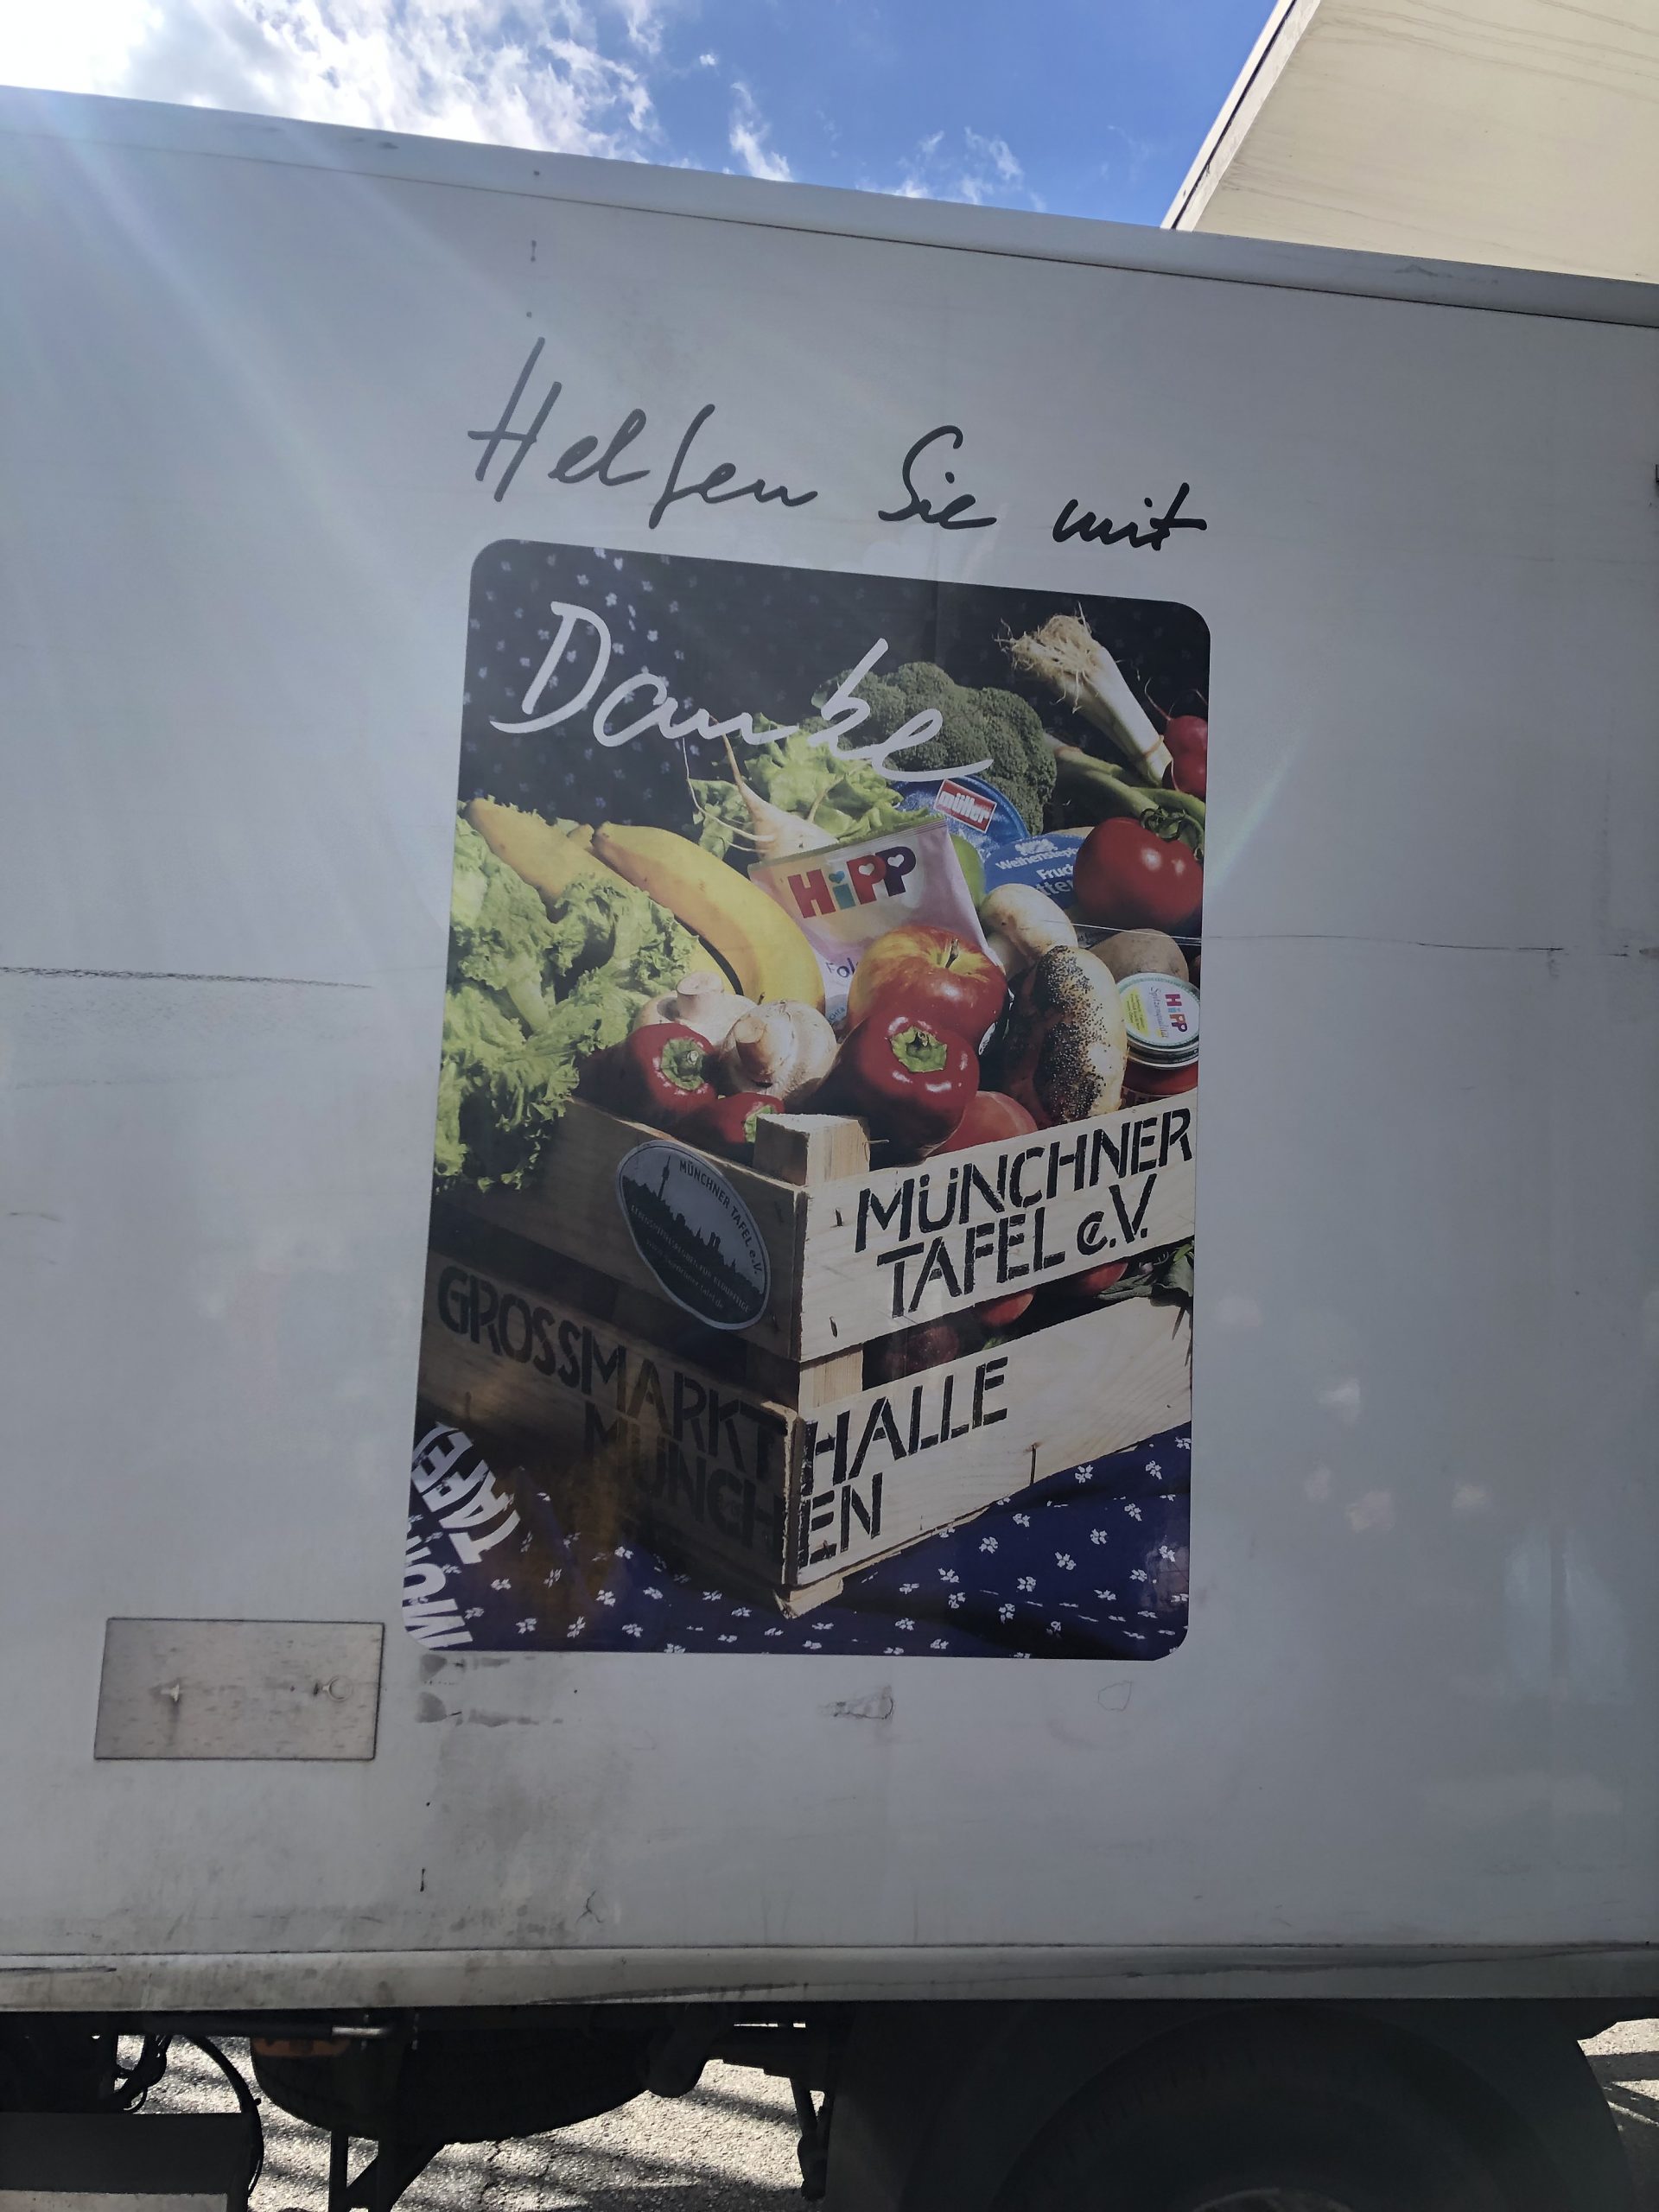 Ein Laster der Münchner Tafel, auf ihm ist ein Bild von Lebensmitteln mit dem Text "Helfen sie mit"